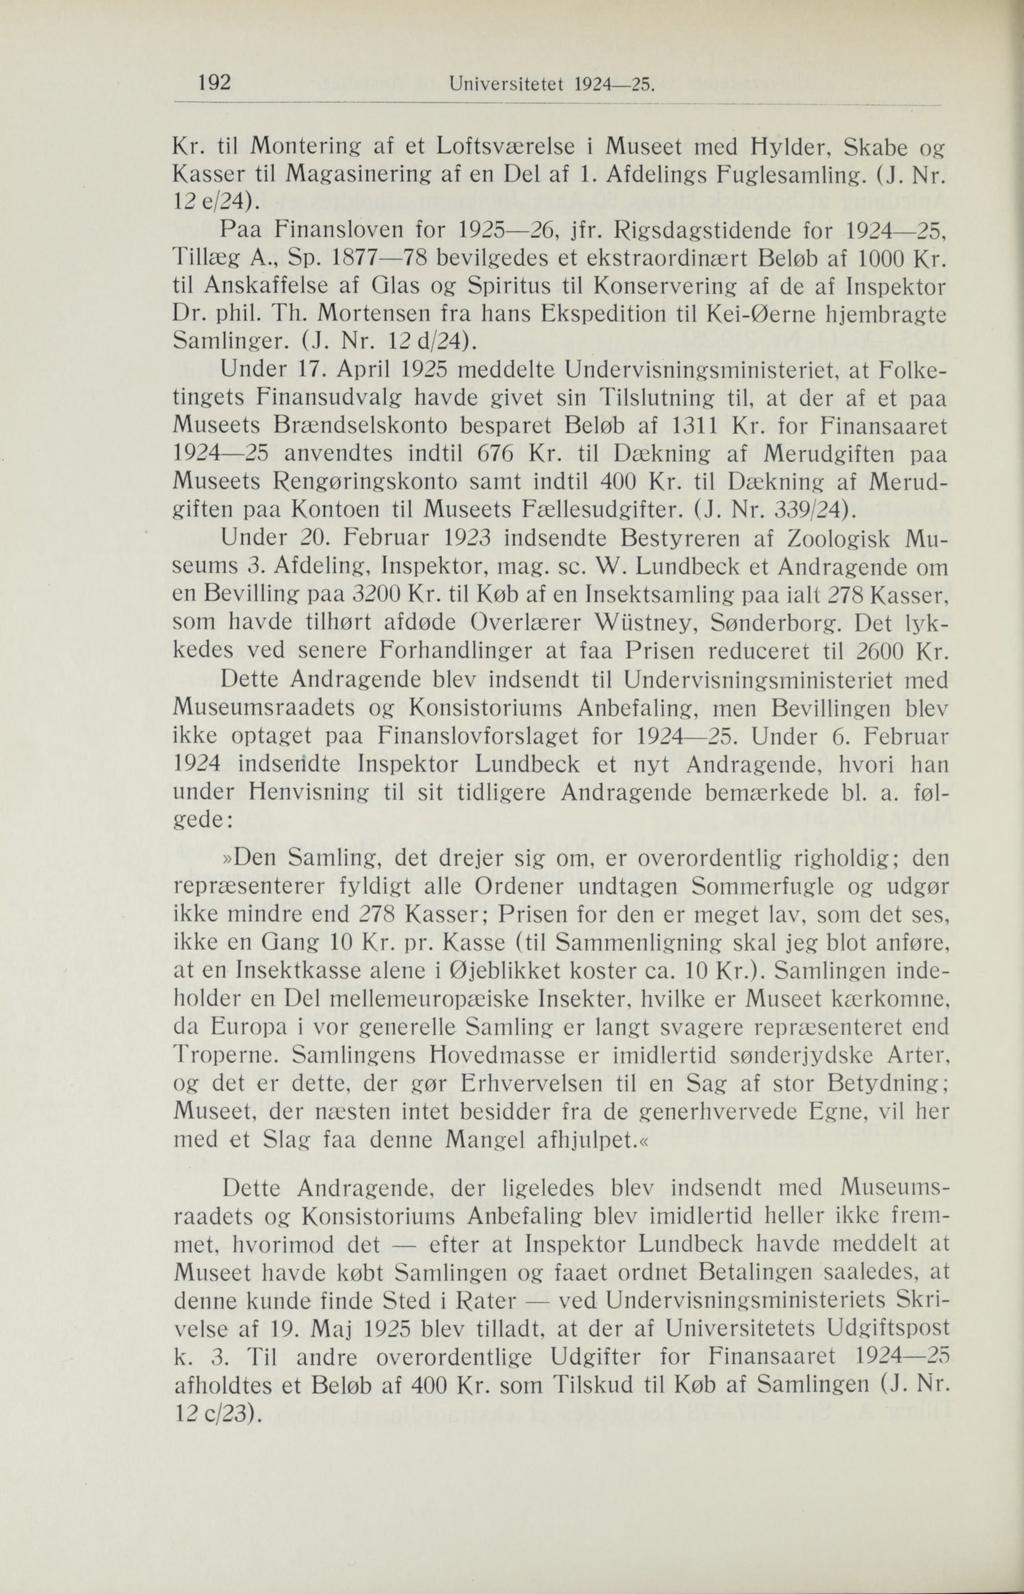 192 Kr. til Montering af et Loftsværelse i Museet med Hylder, Skabe og Kasser til Magasinering af en Del af 1. Afdelings Fuglesamling. (J. Nr. 12 e/24). Tillæg A., Sp.